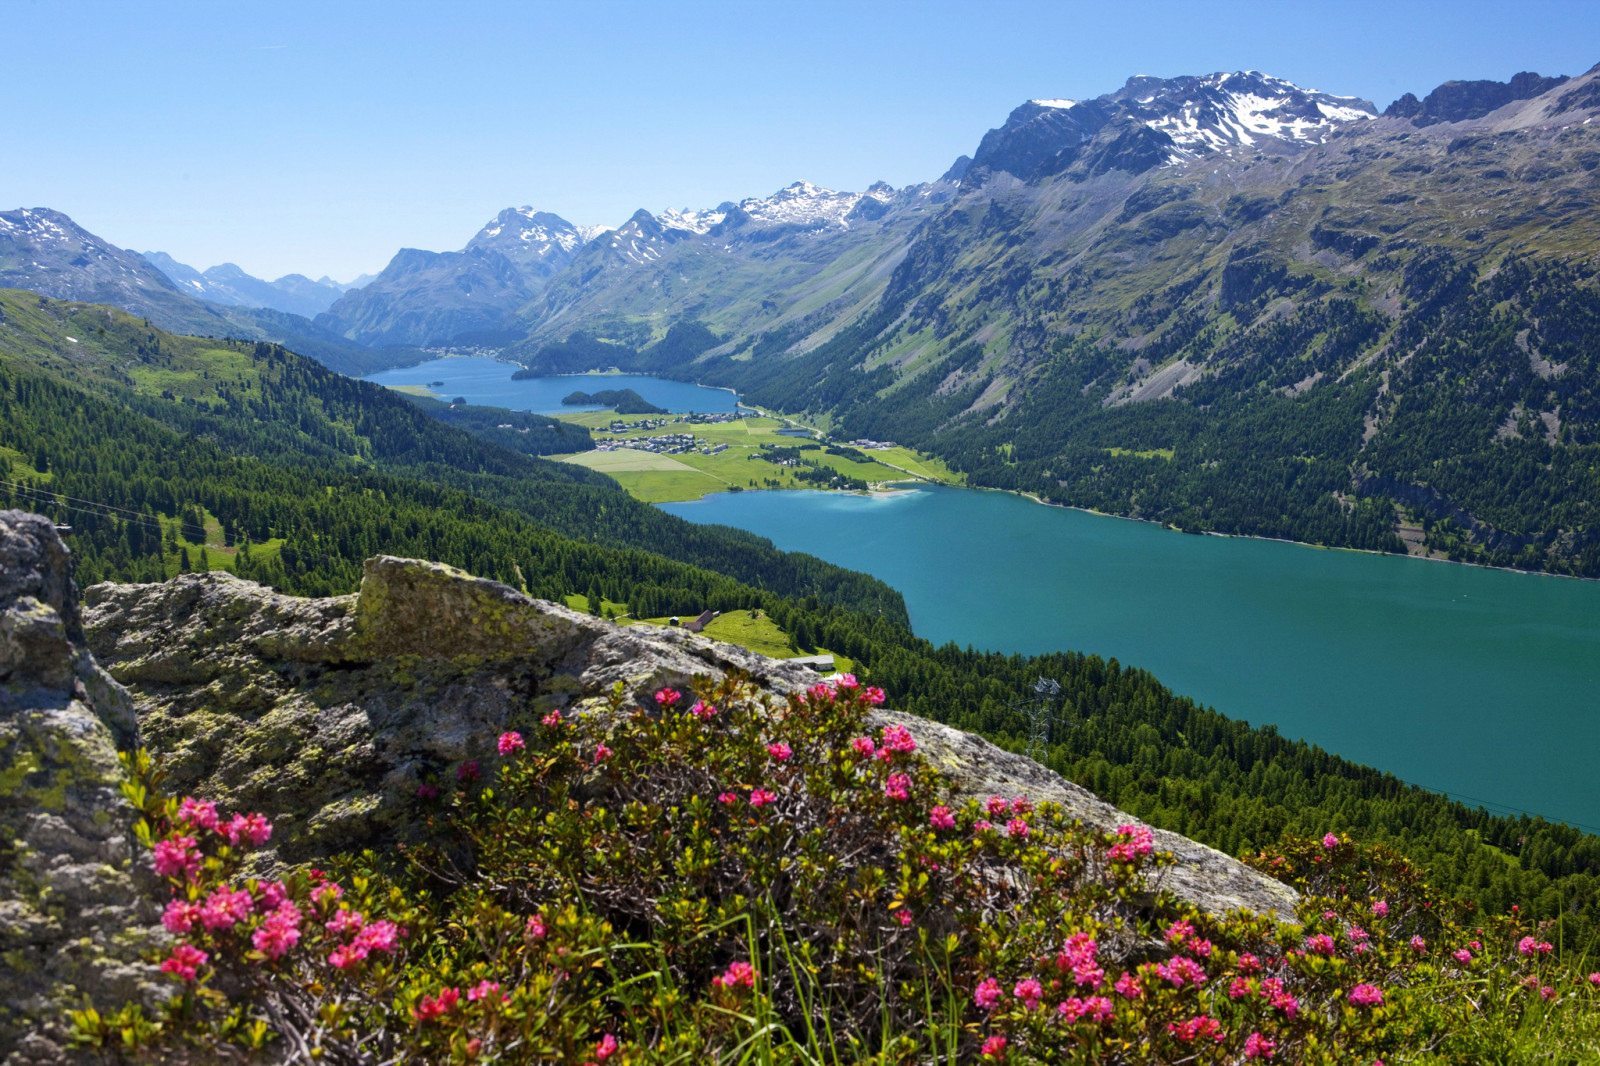 ป่า, ประเทศสวิสเซอร์แลนด์, ทะเลสาป, หิน, ดอกไม้, ภูเขา, หุบเขา, ทัศนียภาพ